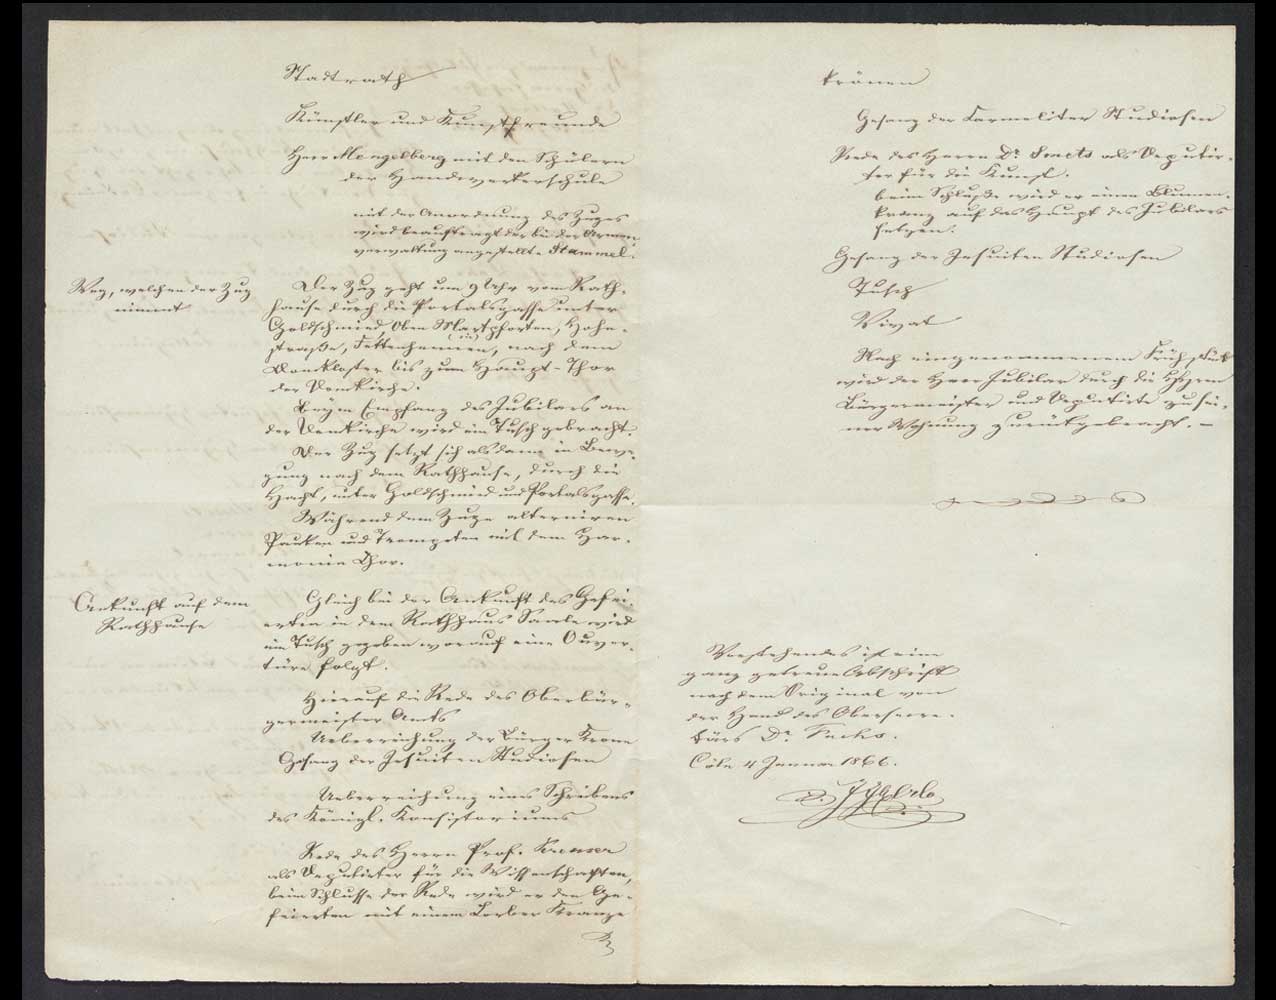 Seite 2 und 3 mit der handschriftlichten Abschrift zum Programm von Wallrafs Jubelfeier.